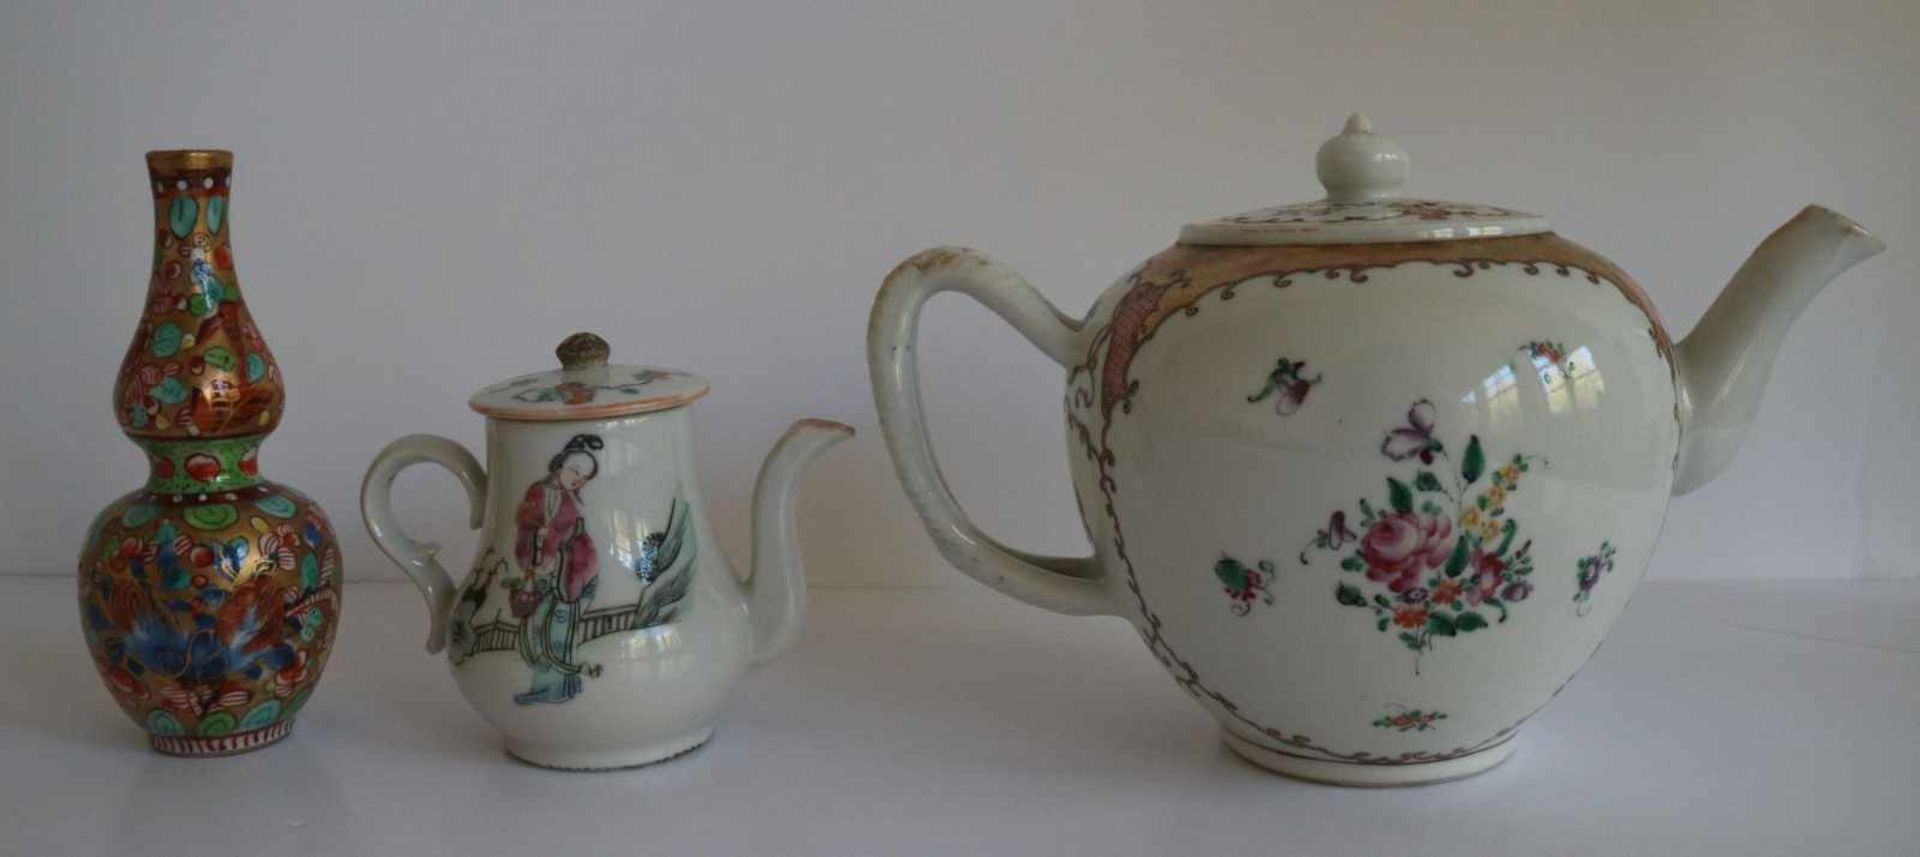 Porcelain Teapot Chine de commande, calebas vase Samson and teapot (crack) H 9,5 tot 13,5 cm - Bild 3 aus 6